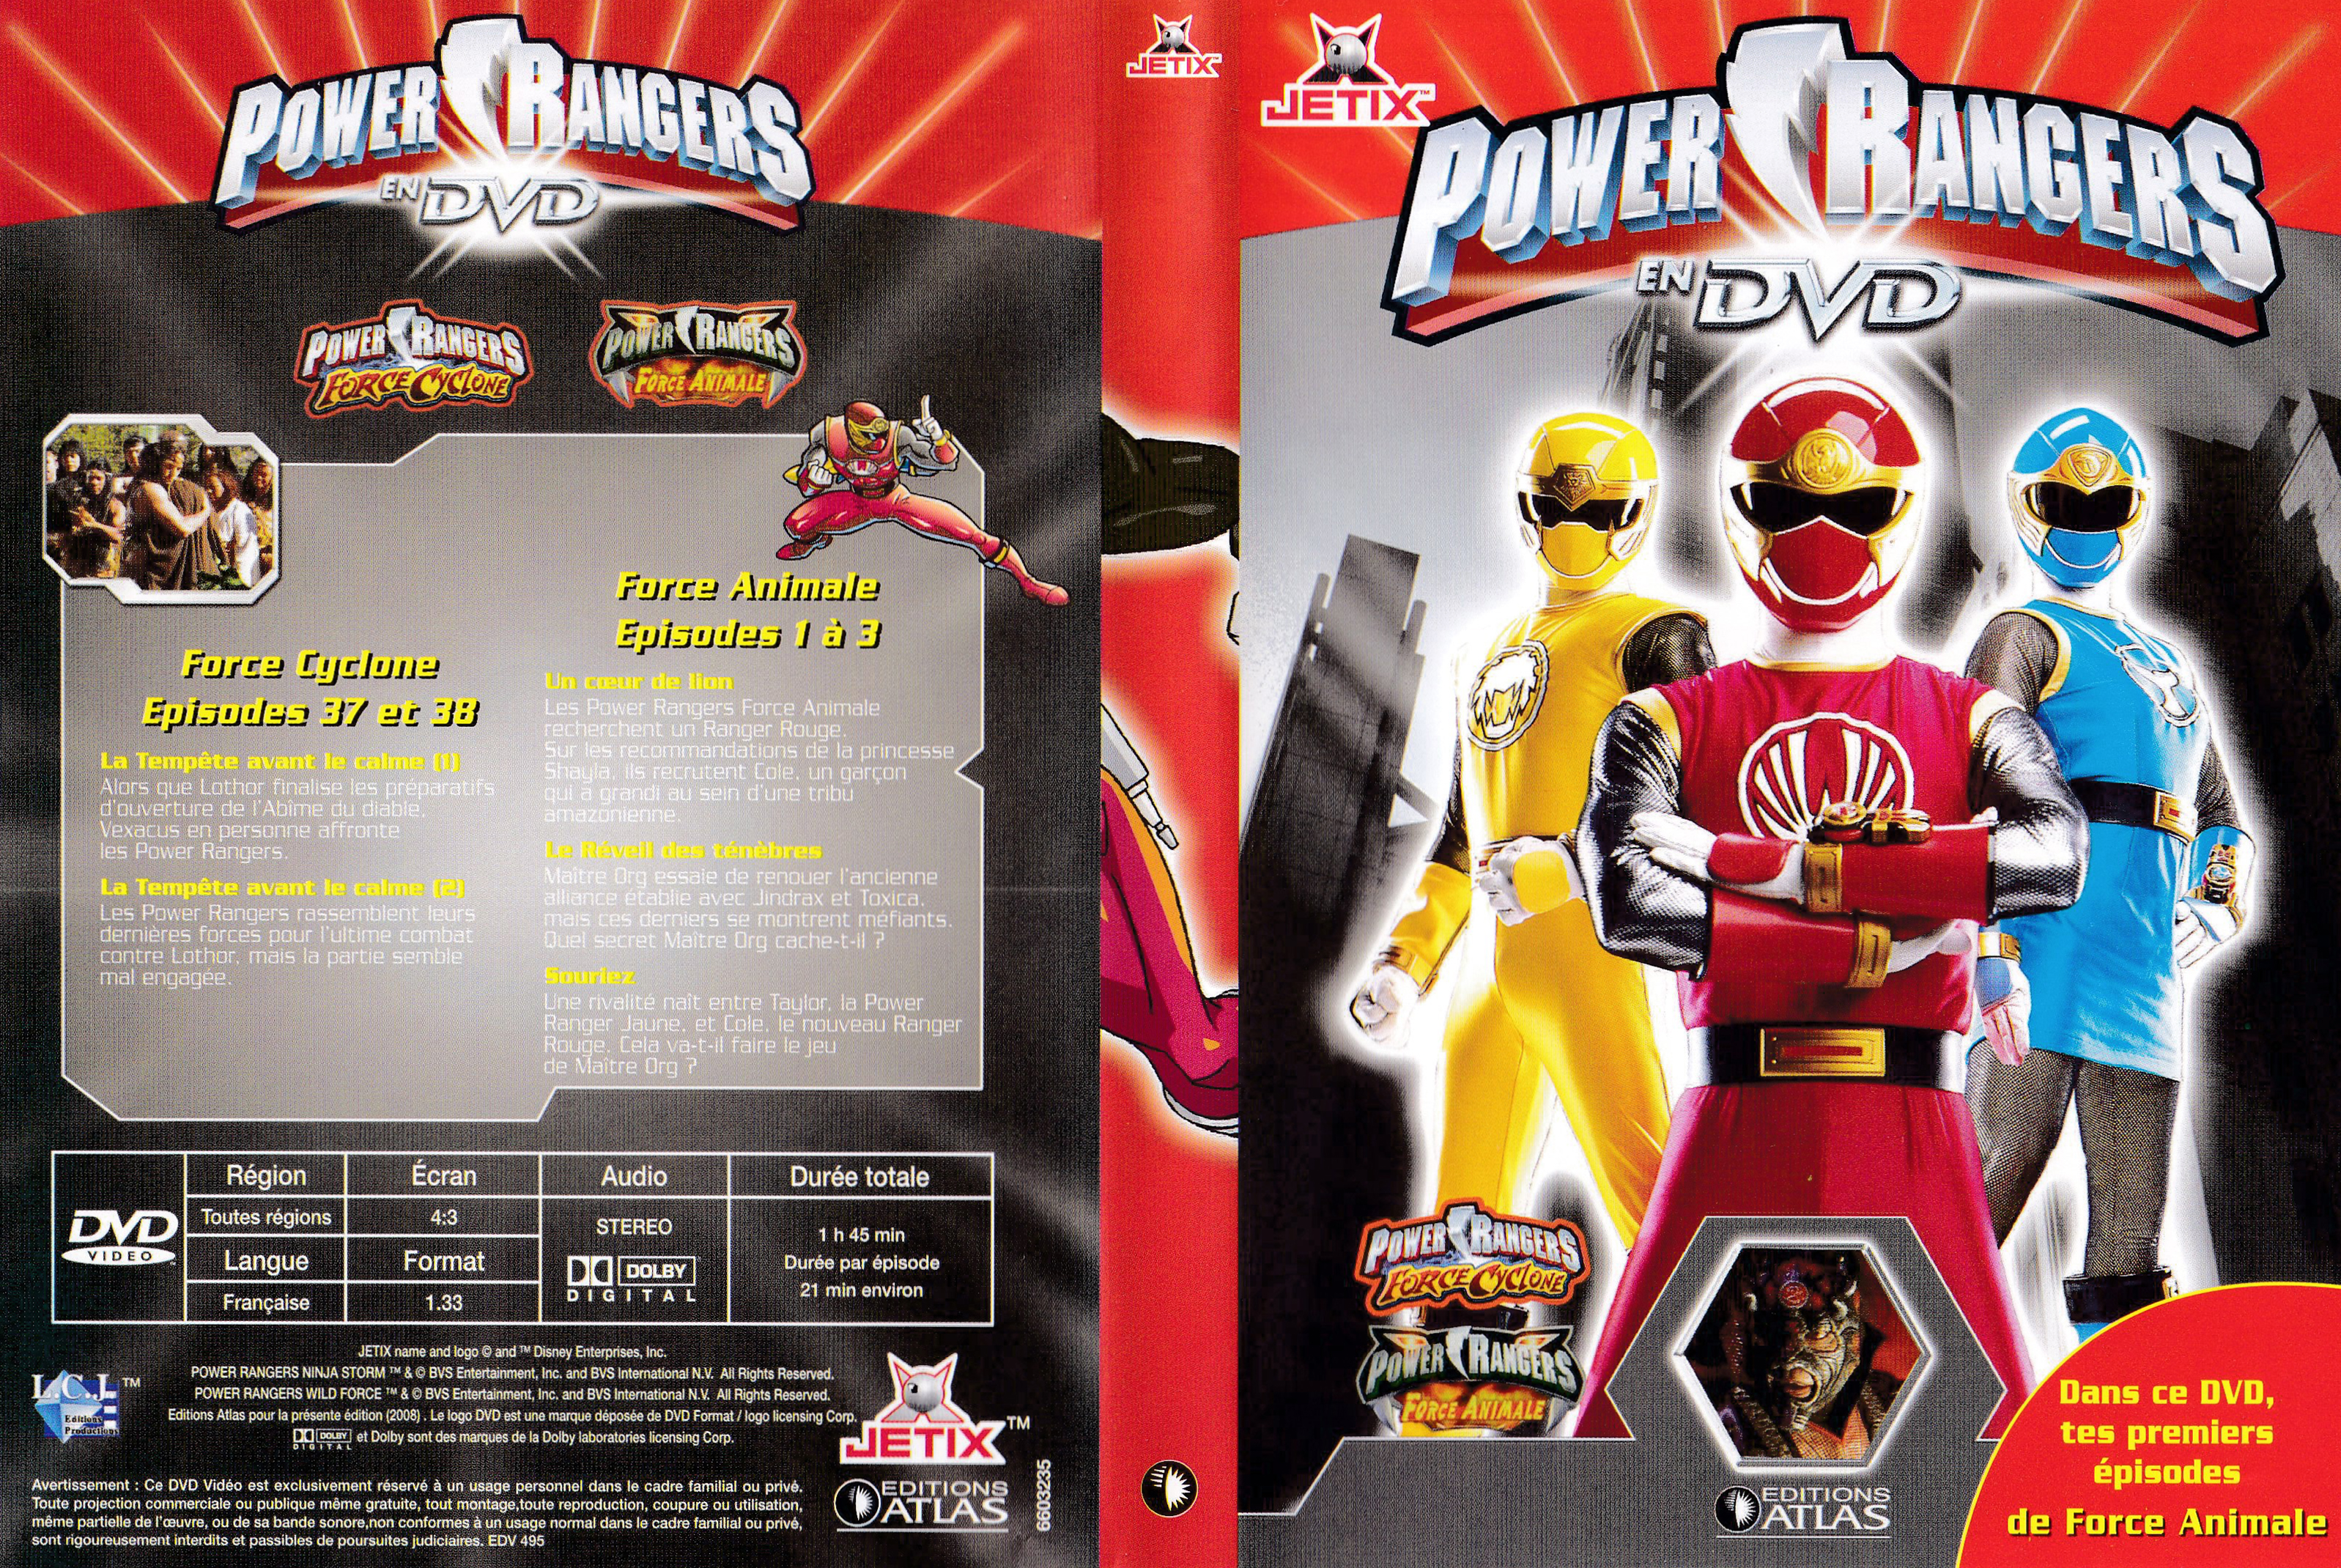 Power Rangers en DVD n°35